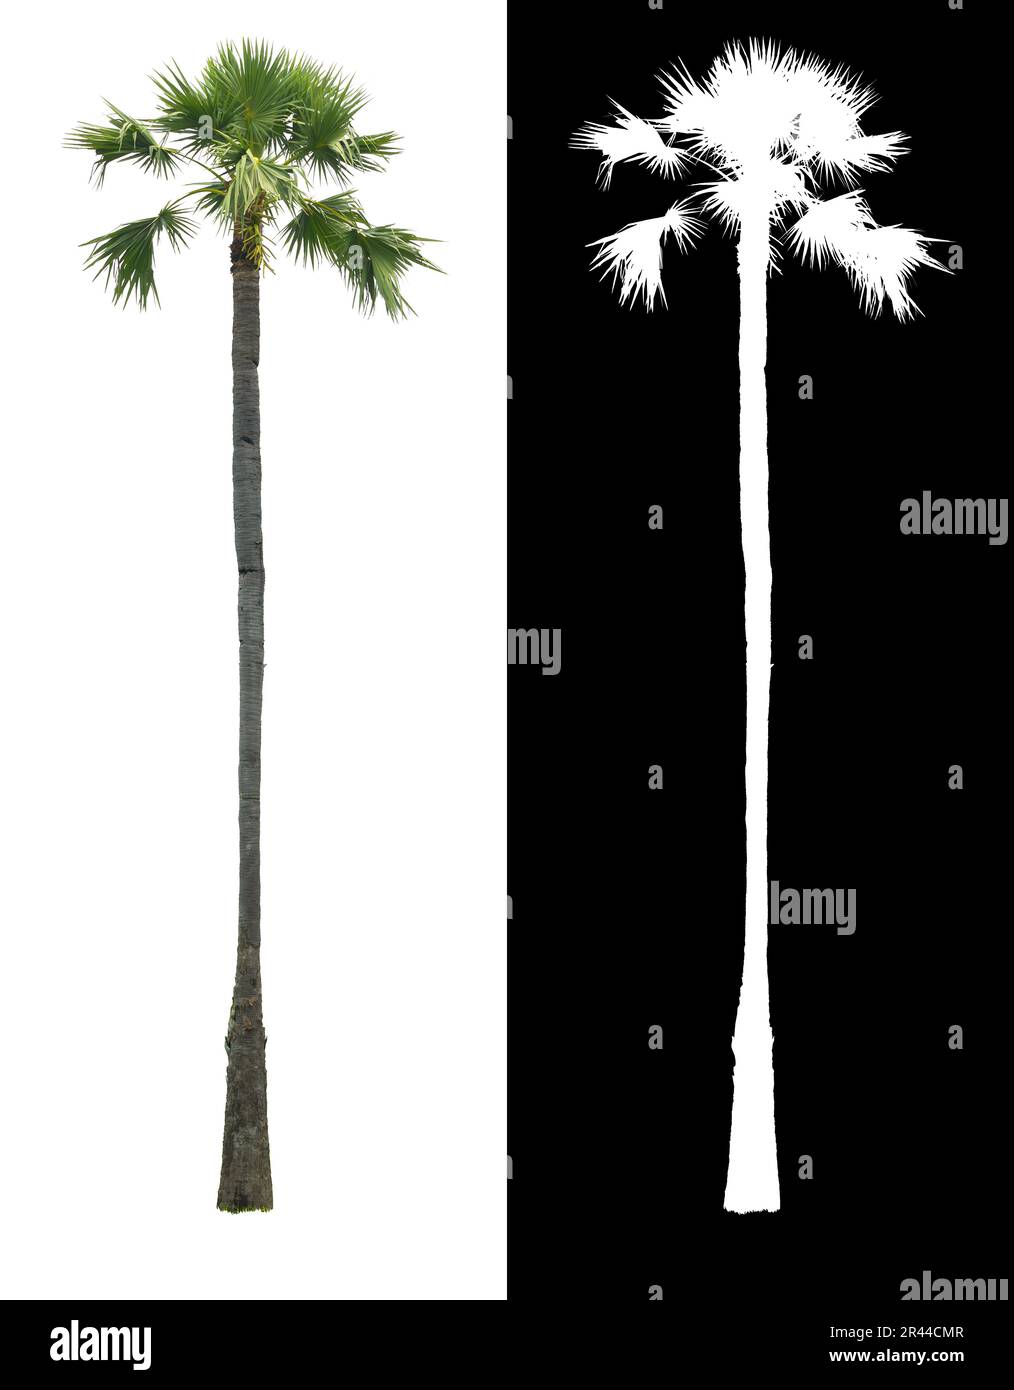 Albero di palma alto tailandese asiatico o albero di zucchero, palma Toddy isolato su sfondo bianco con canale alfa shadow split. Foto Stock